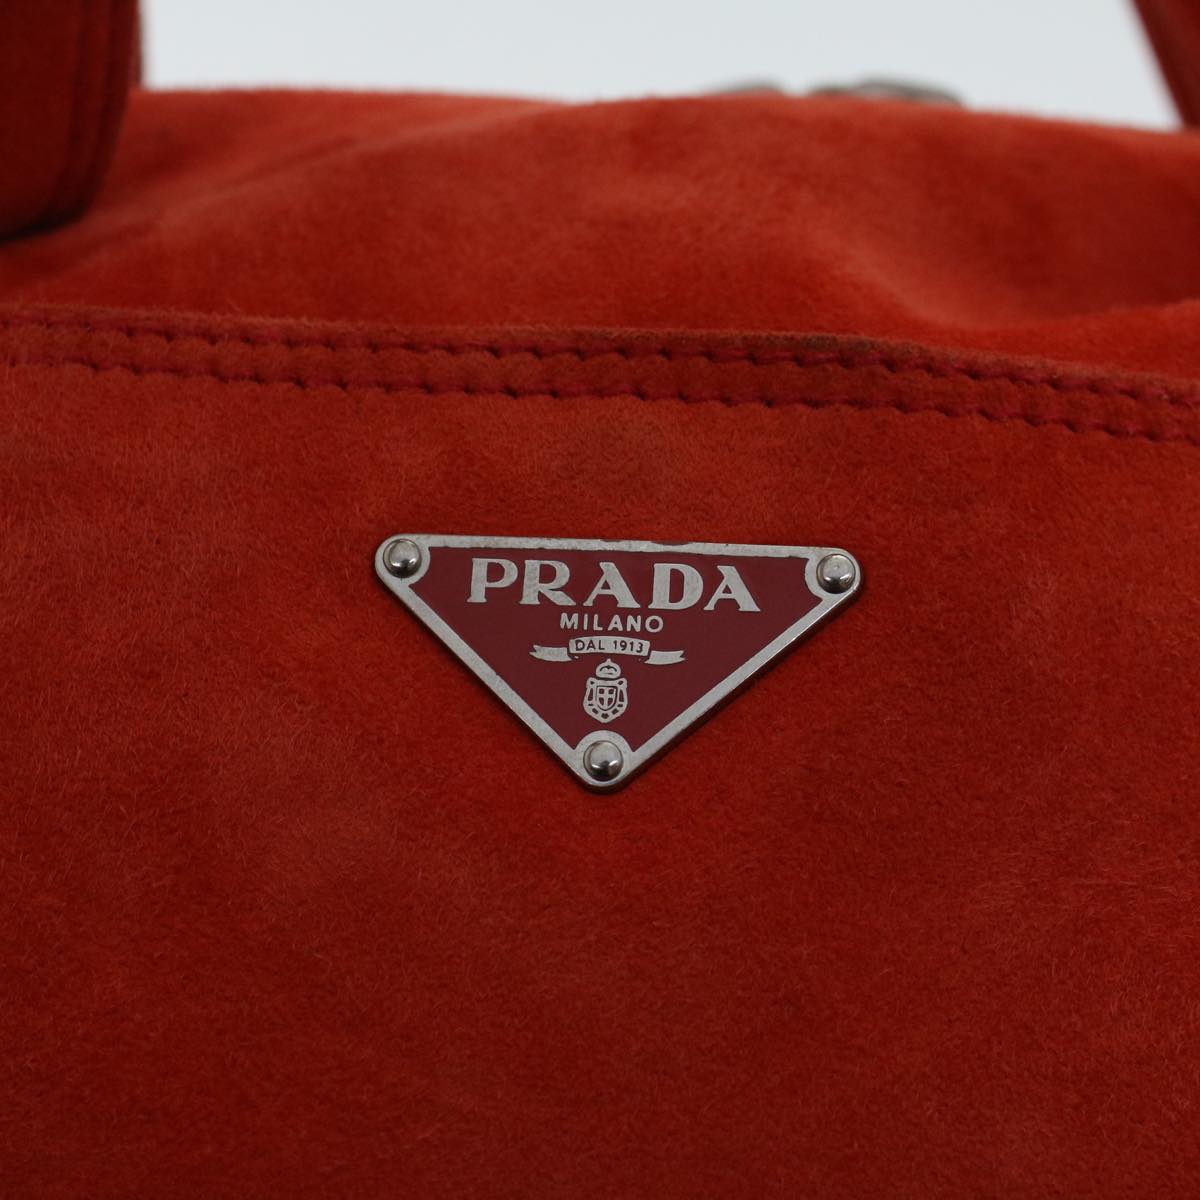 PRADA Hand Bag Suede Orange Auth 48617